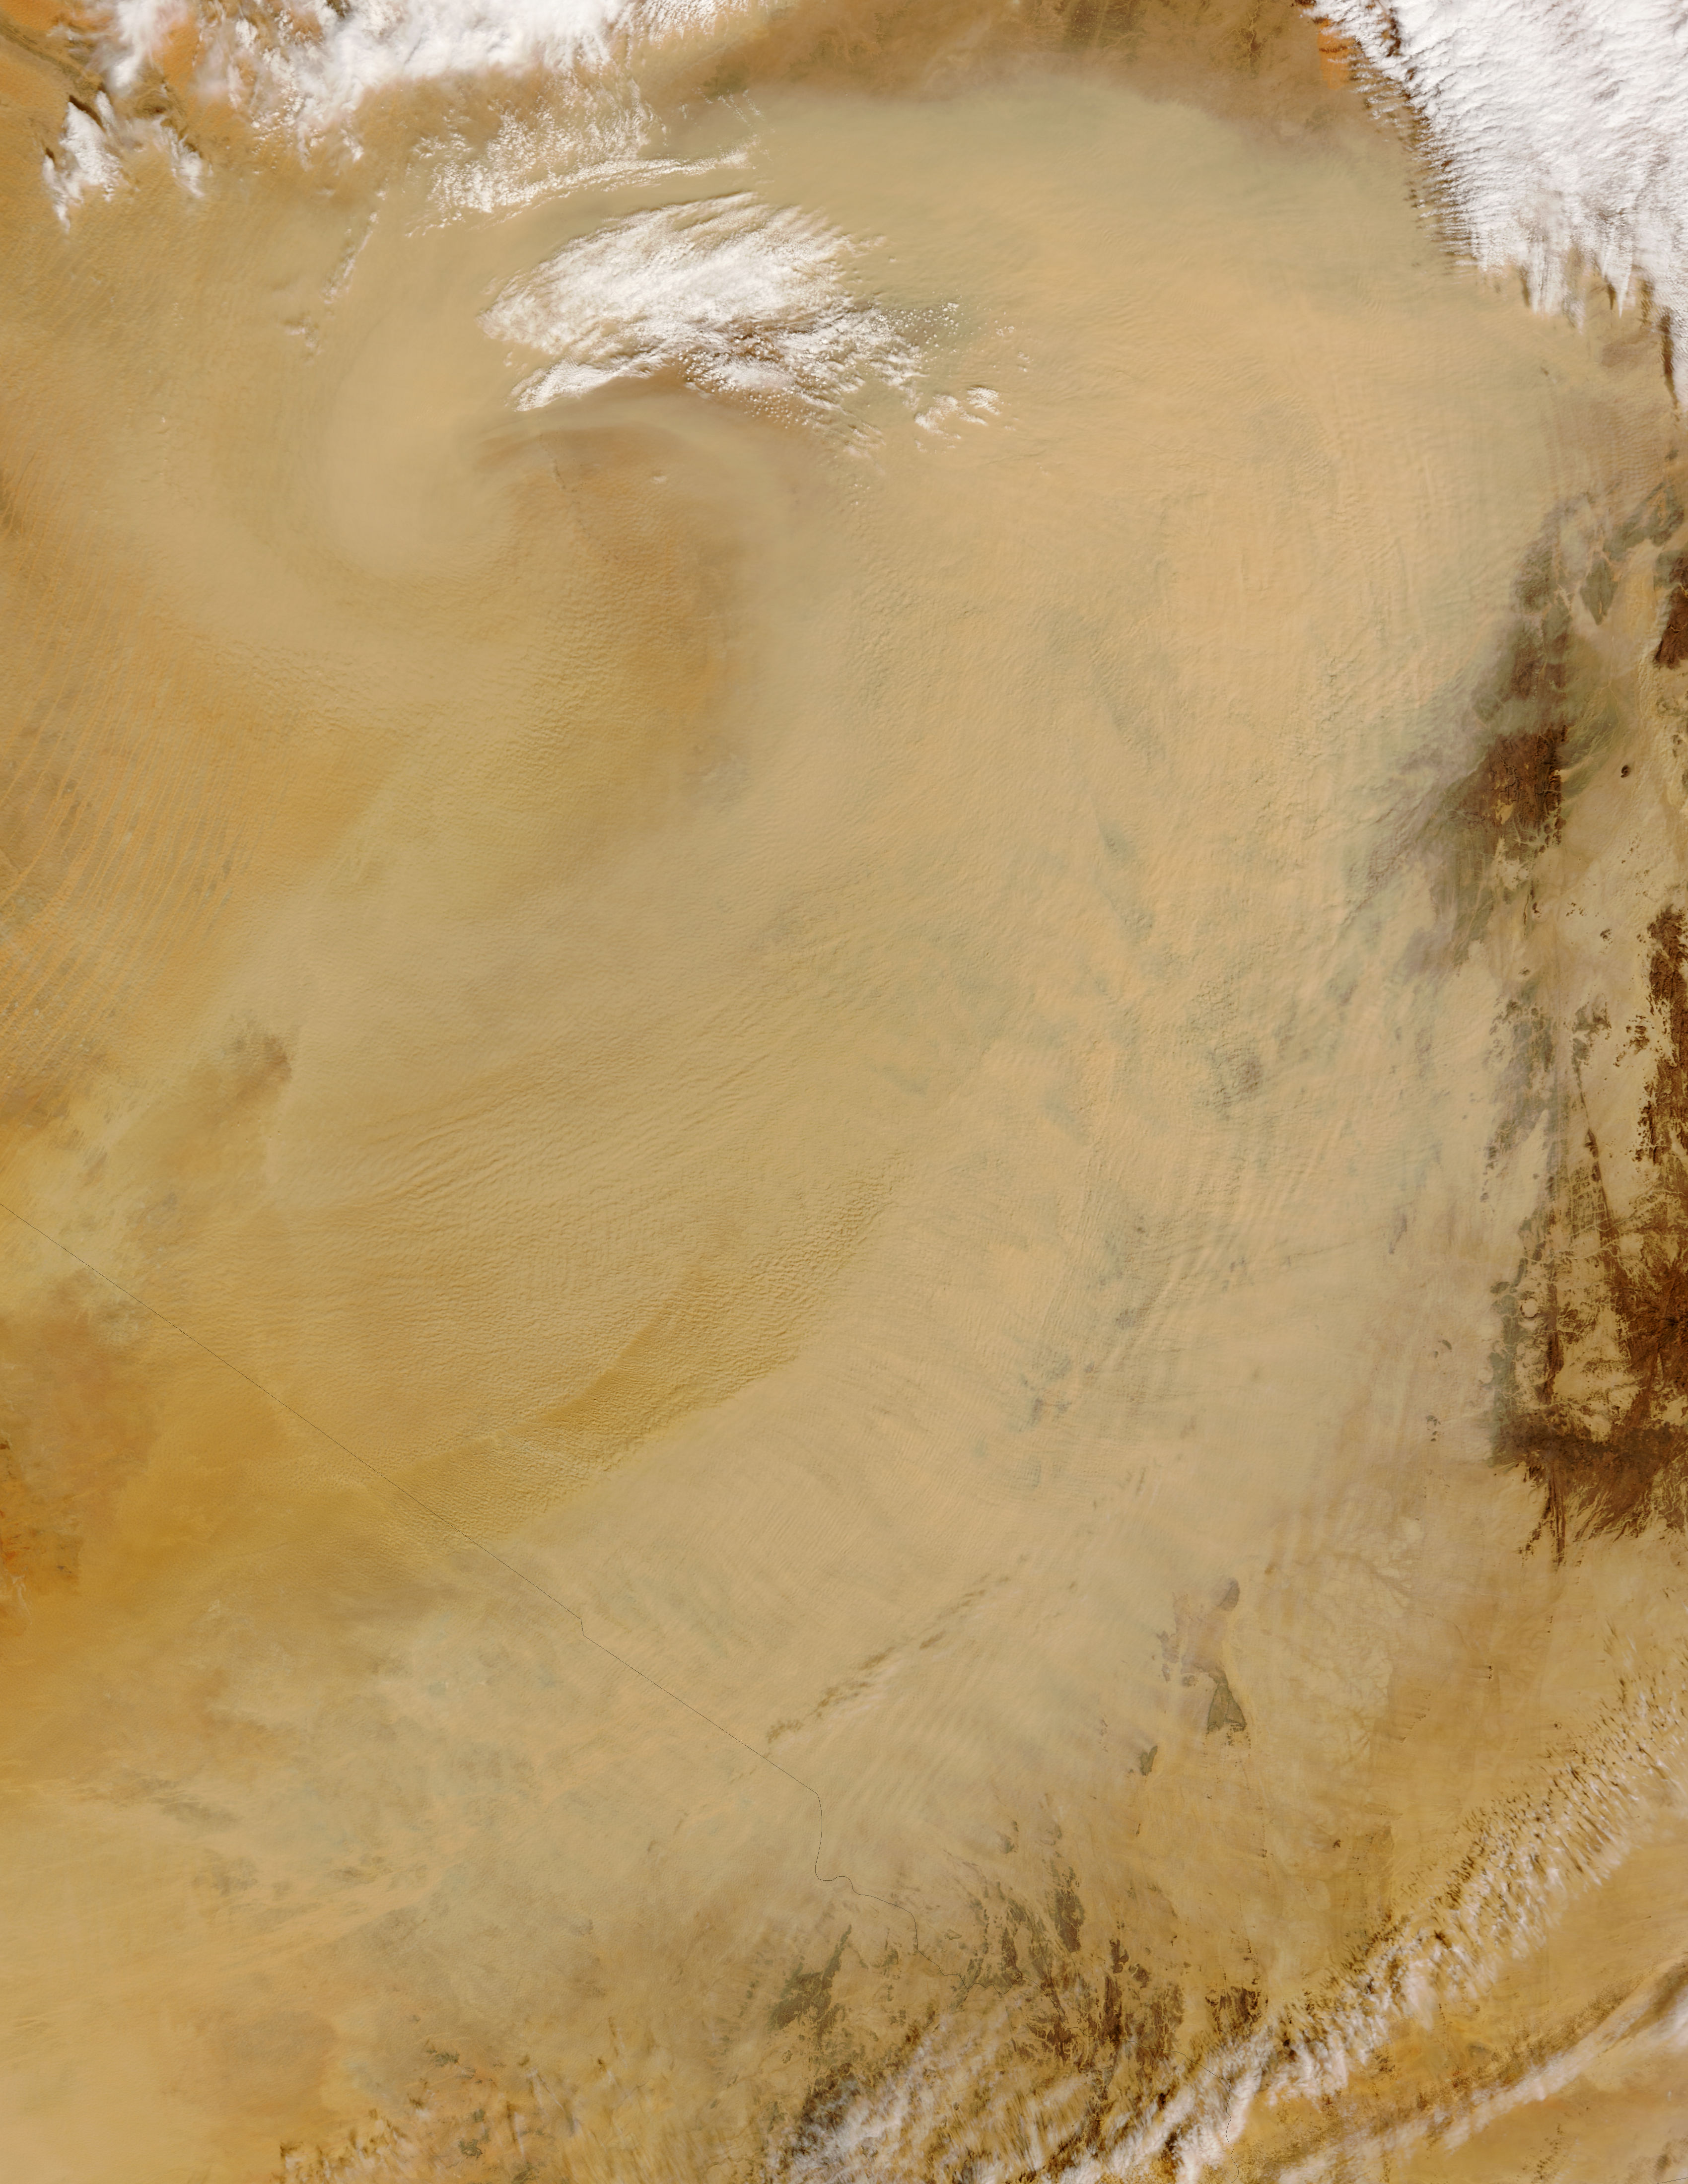 Dust Storm From The Sahara Desert